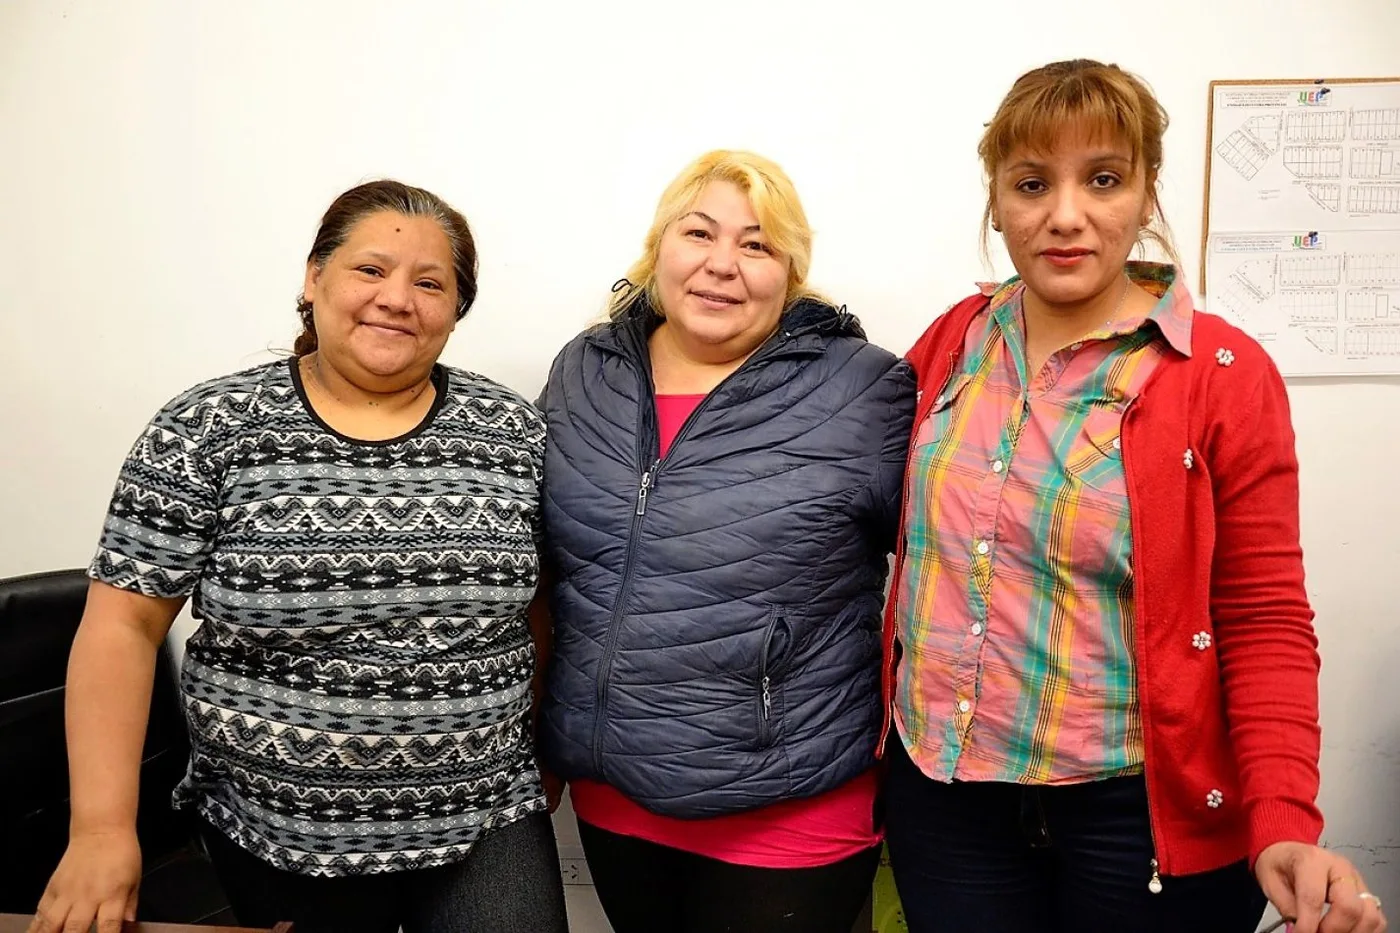 Ramona, en el centro, junto a Gladys y Paula, compañeras de trabajo quienes también colaboran con las tareas comunitarias que se llevan adelante en el